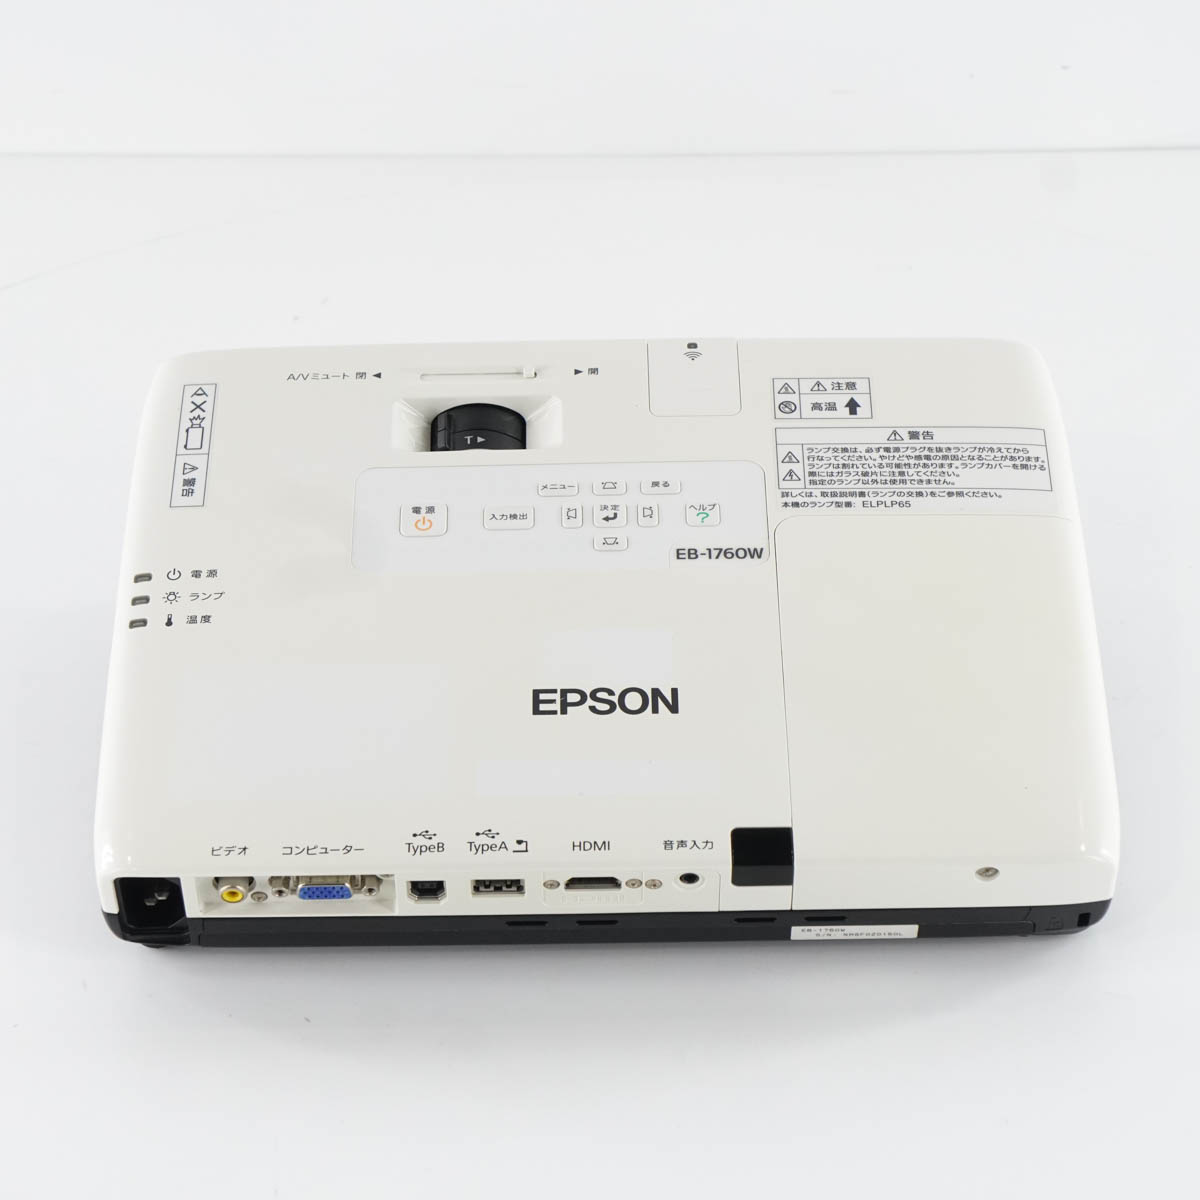 PG]USED 8日保証 ランプ672時間 EPSON EB-1760W H361D プロジェクター 